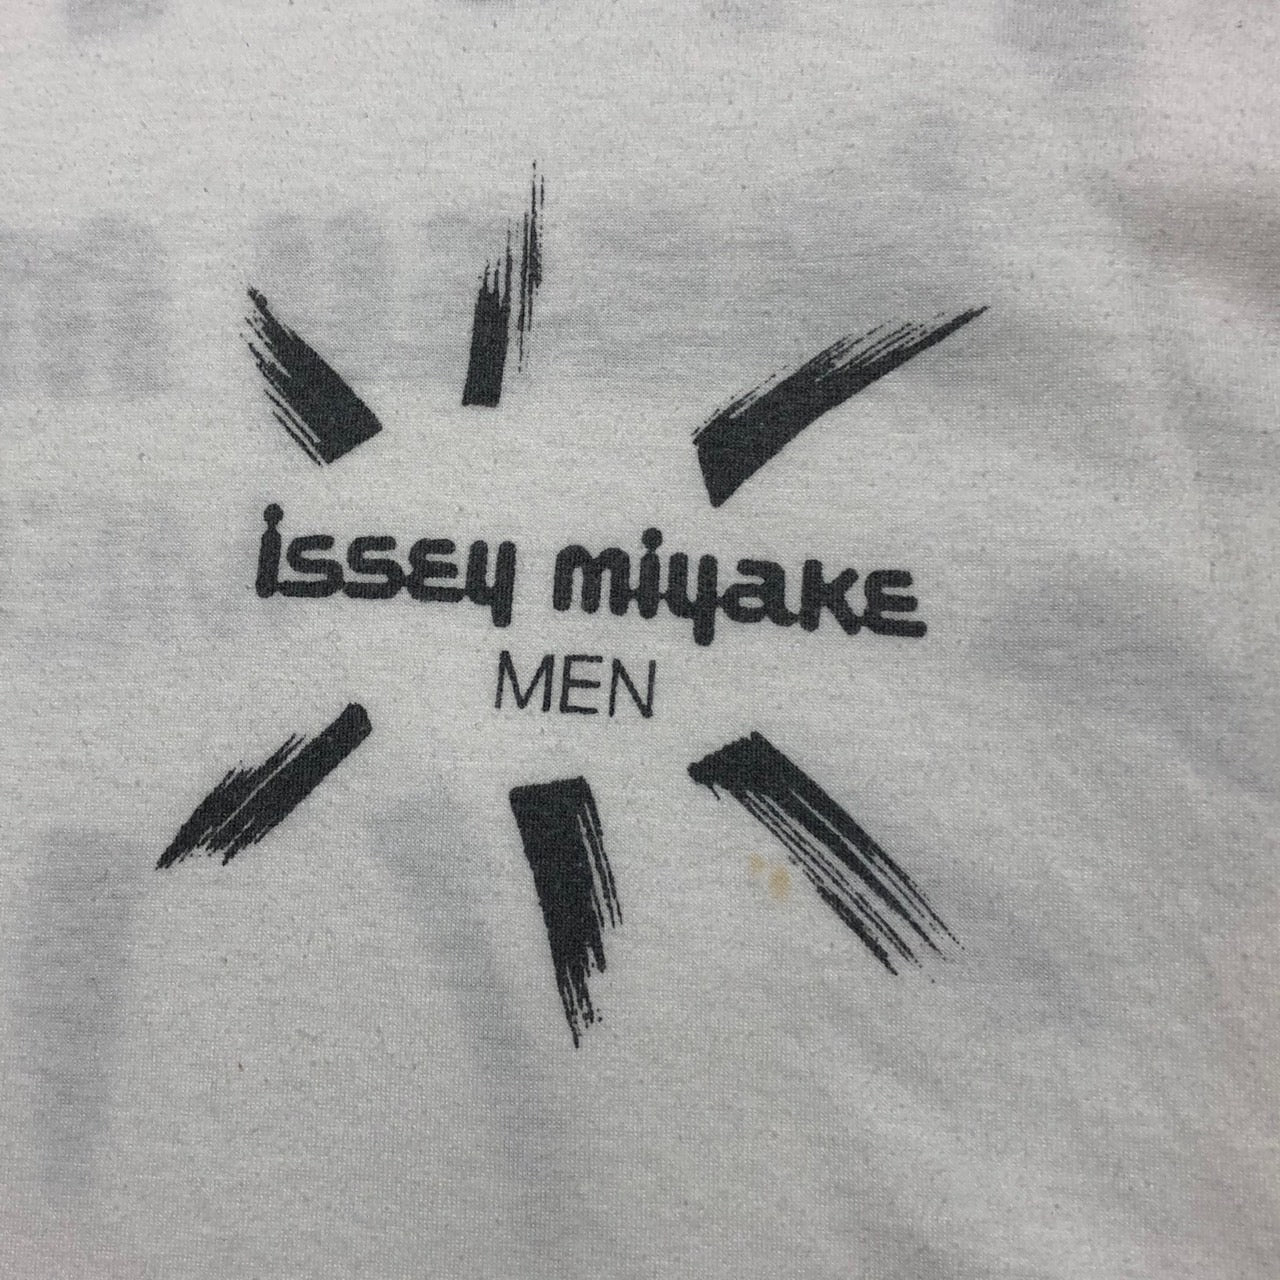 ISSEY MIYAKE MEN(イッセイミヤケメン) 80's vintage logo T-shirt 